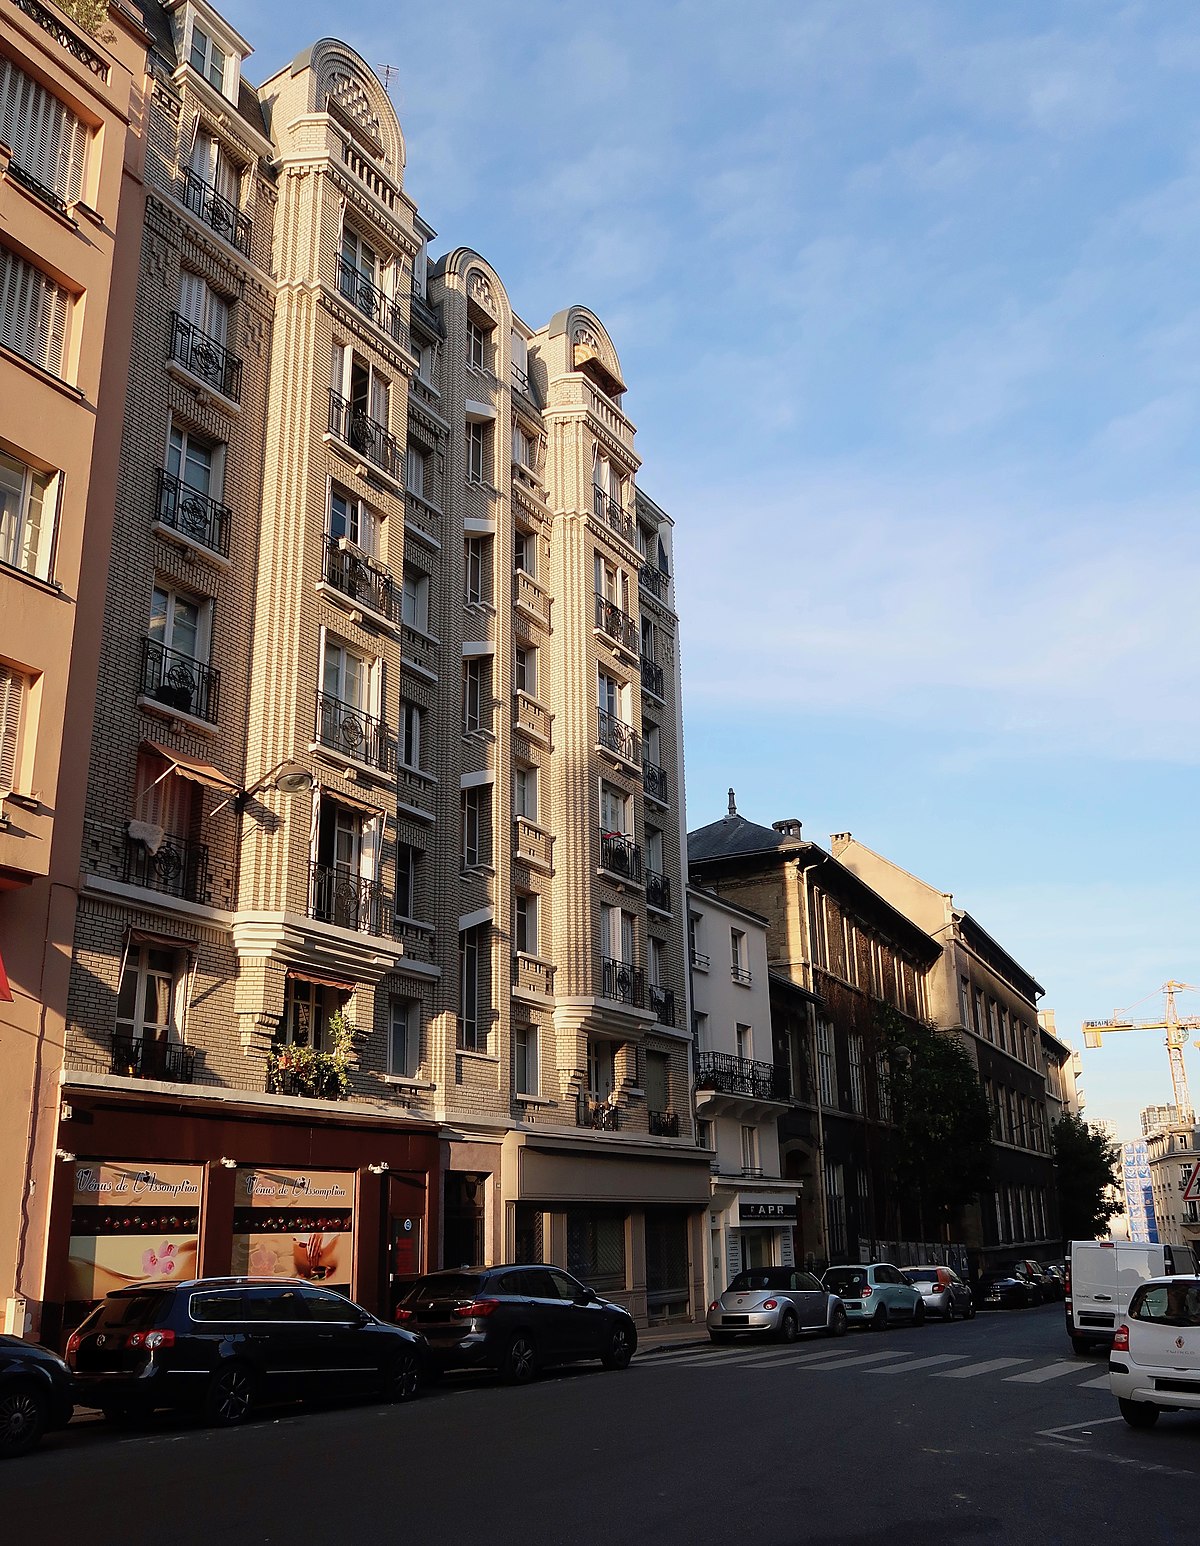 File:La Grande épicerie de Paris, 80 rue de Passy, Paris 16e 1.jpg -  Wikimedia Commons